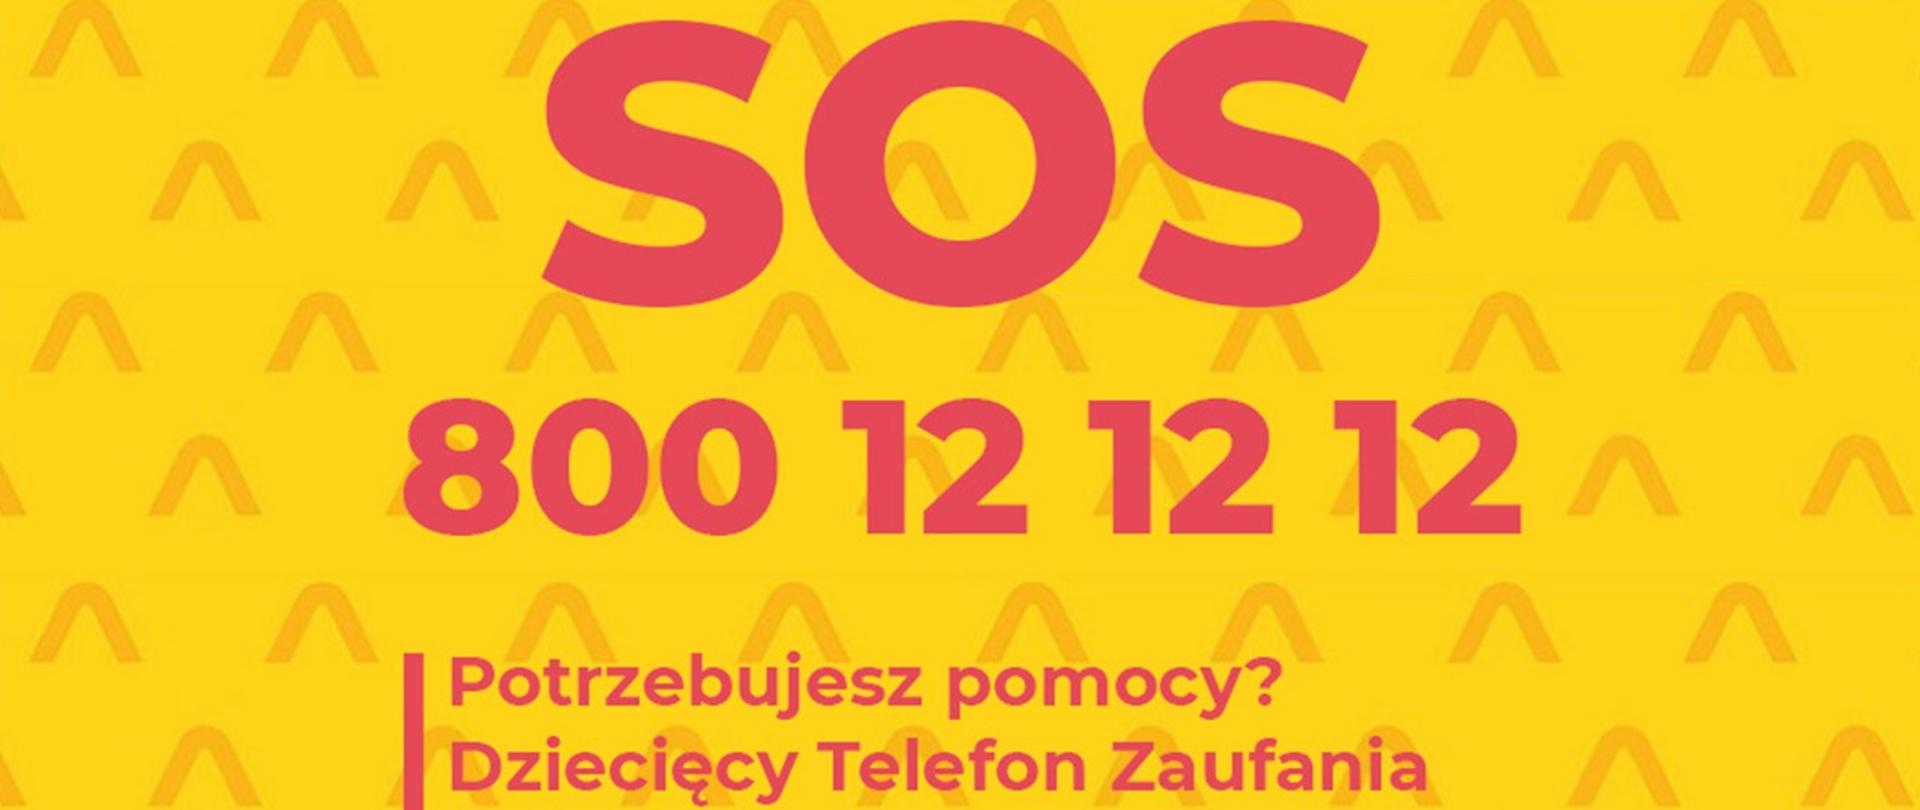 Plansza na żółtym tle z różowym napisem telefon zaufania rzecznika praw dziecka 800 12 12 12